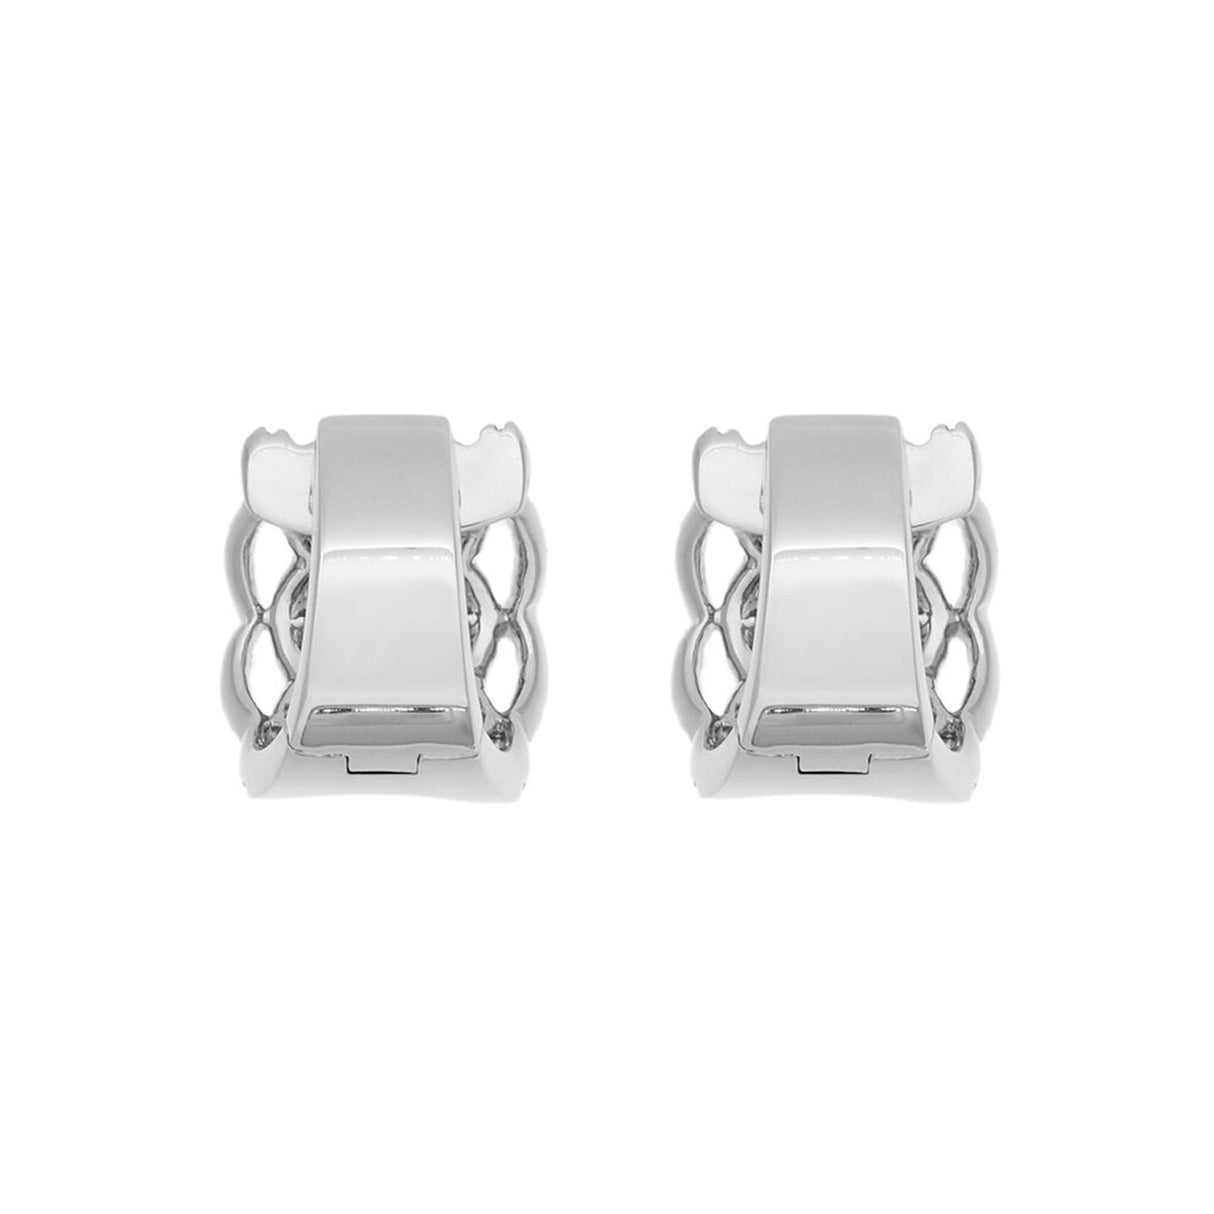 18K White Gold 2.19 Carat Diamond Hoop Earrings